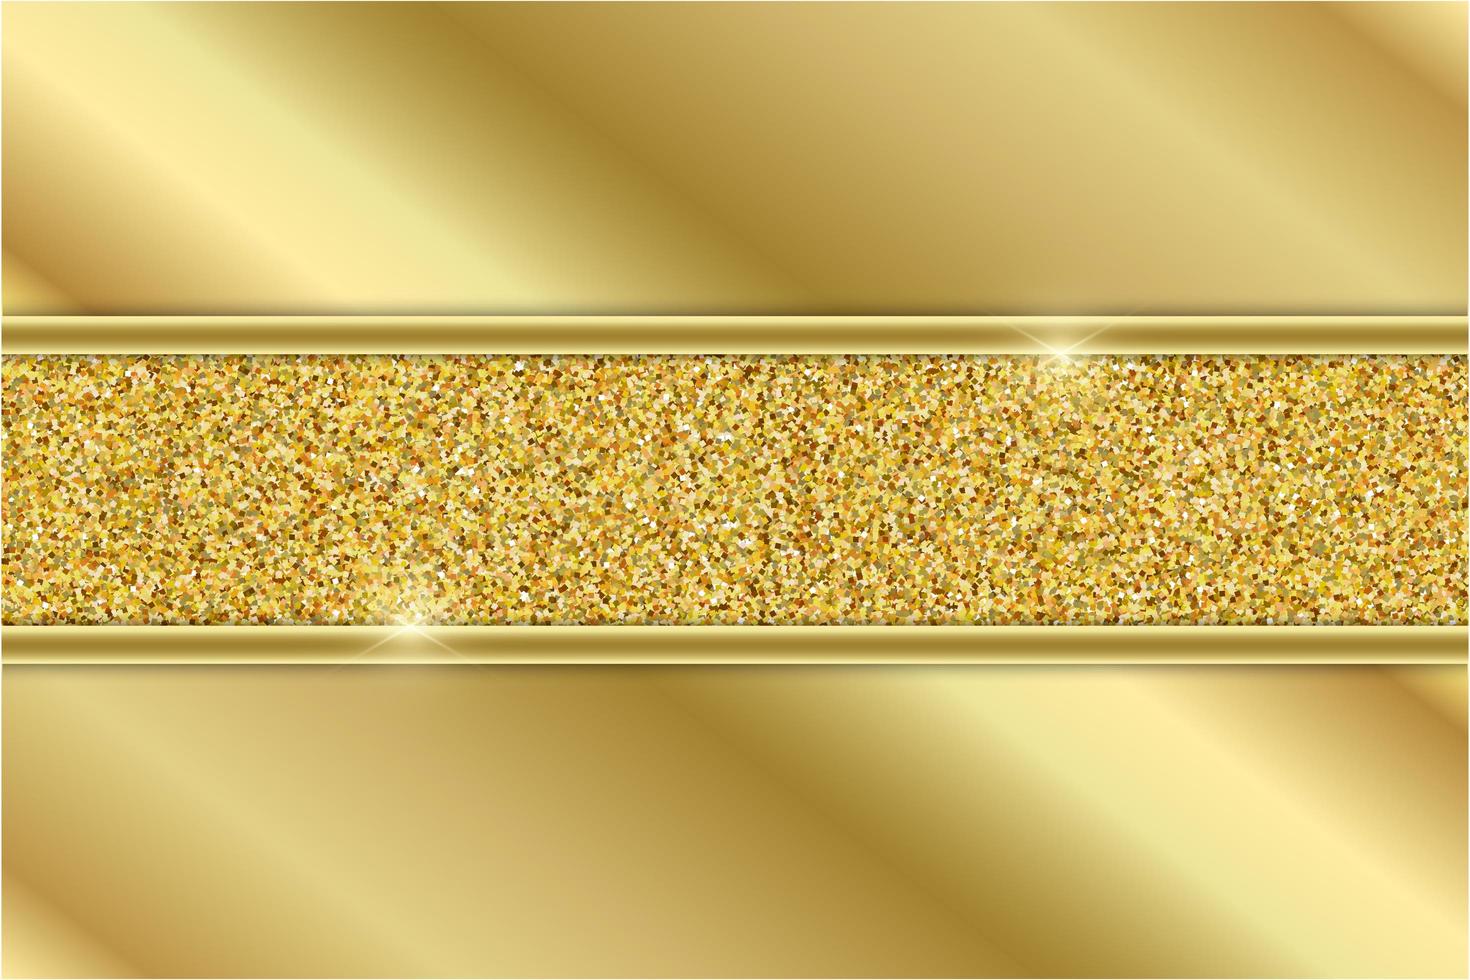 pannelli oro metallizzati con sezione glitterata dorata vettore